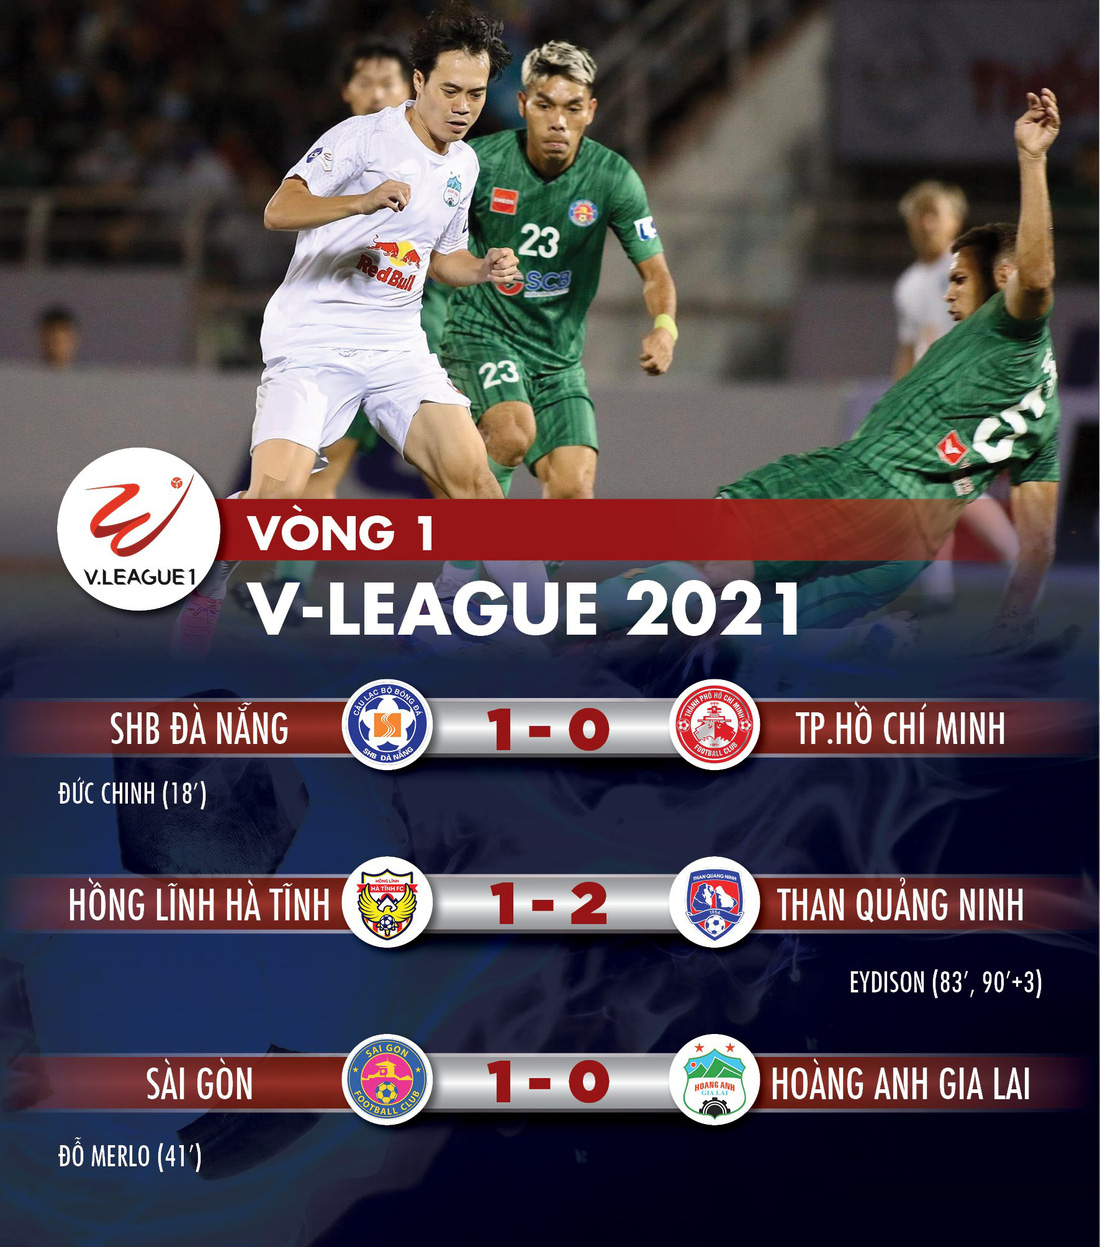 Kết quả, bảng xếp hạng V-League 2021: Hà Nội, Viettel, HAGL ở nhóm cuối bảng - Ảnh 1.